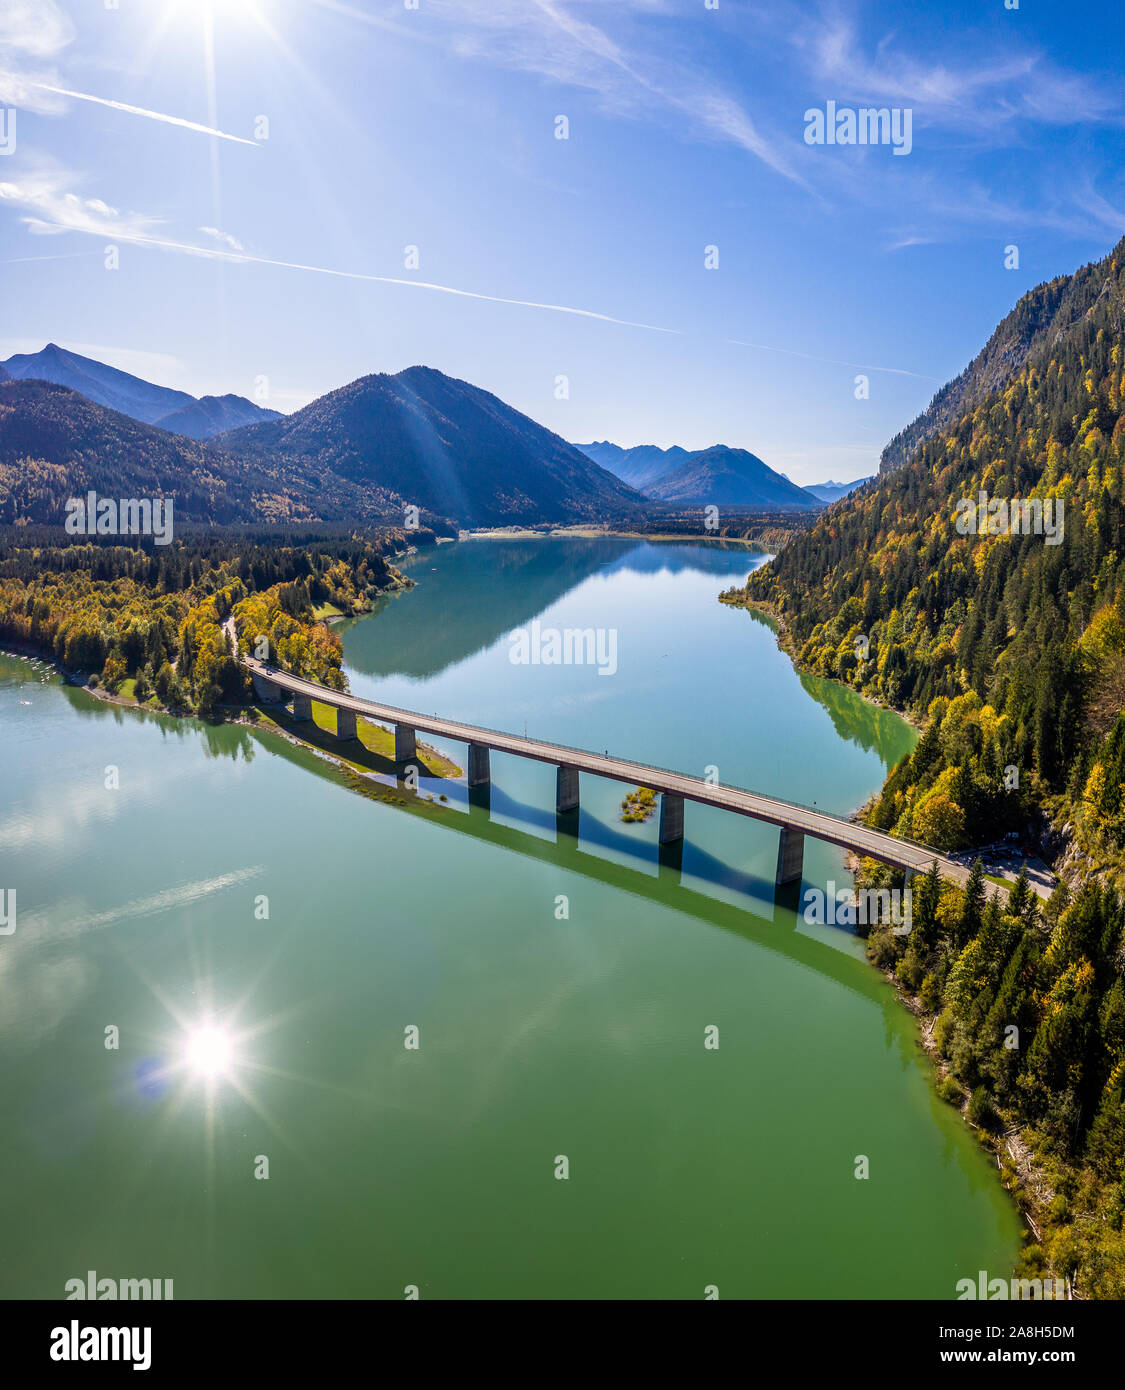 Malerische Luftaufnahme der Brücke über den See Sylvenstein mit schönen Reflexionen. Alpen Karwendelgebirge im Rücken. Herbst Landschaft von Bayern Stockfoto